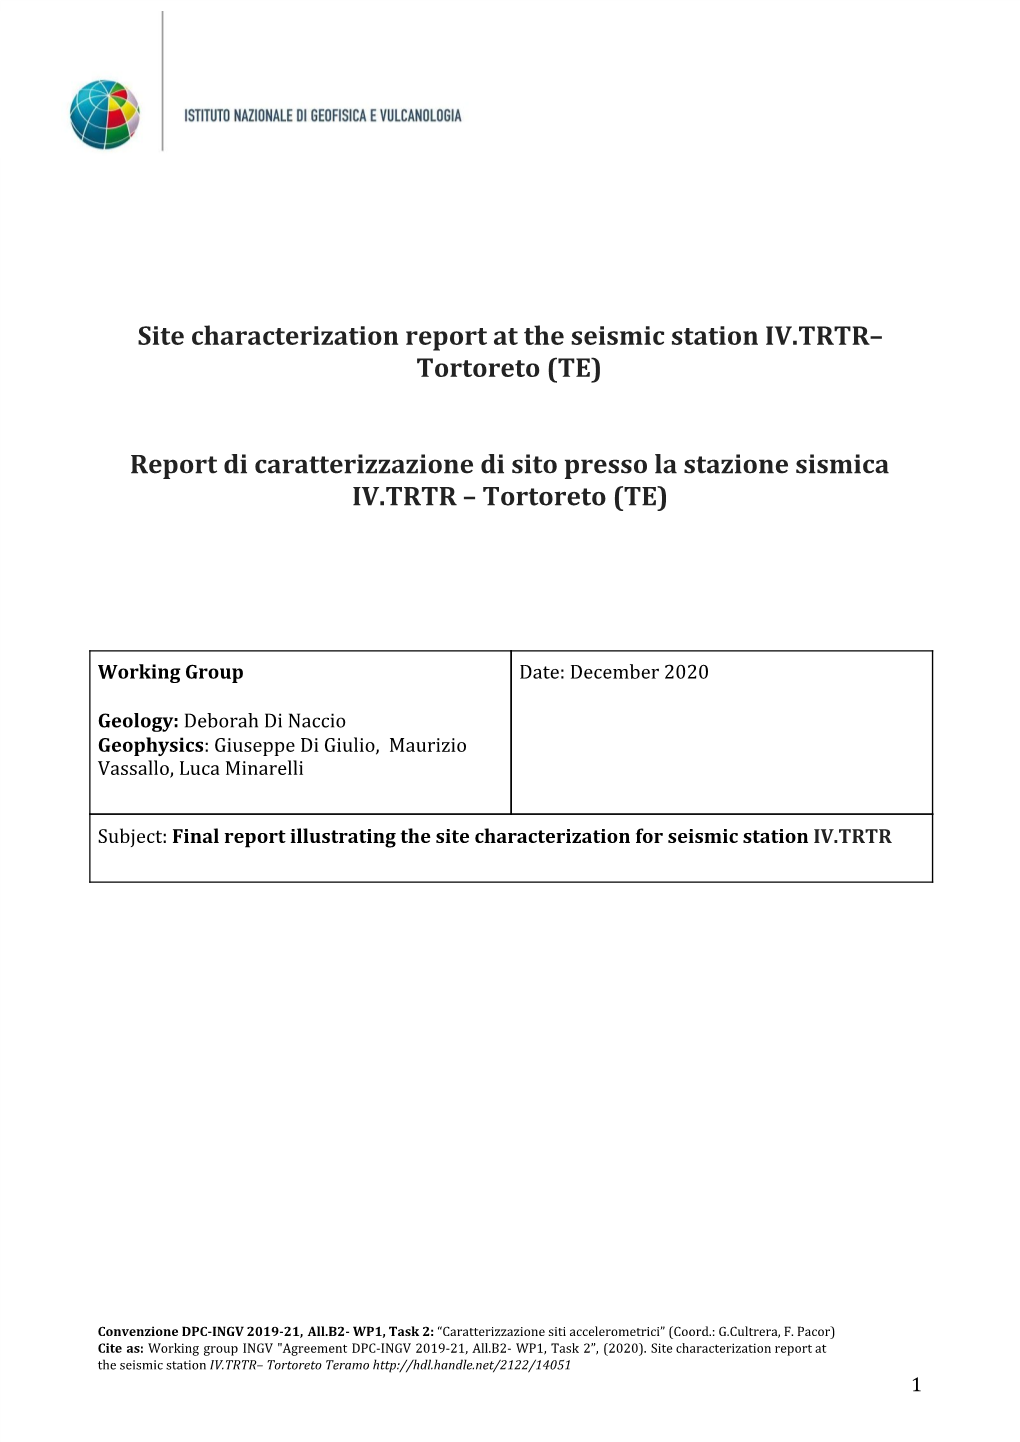 Site Characterization Report at the Seismic Station ​IV.TRTR– Tortoreto (TE) Report Di Caratterizzazione Di Sito Presso La S